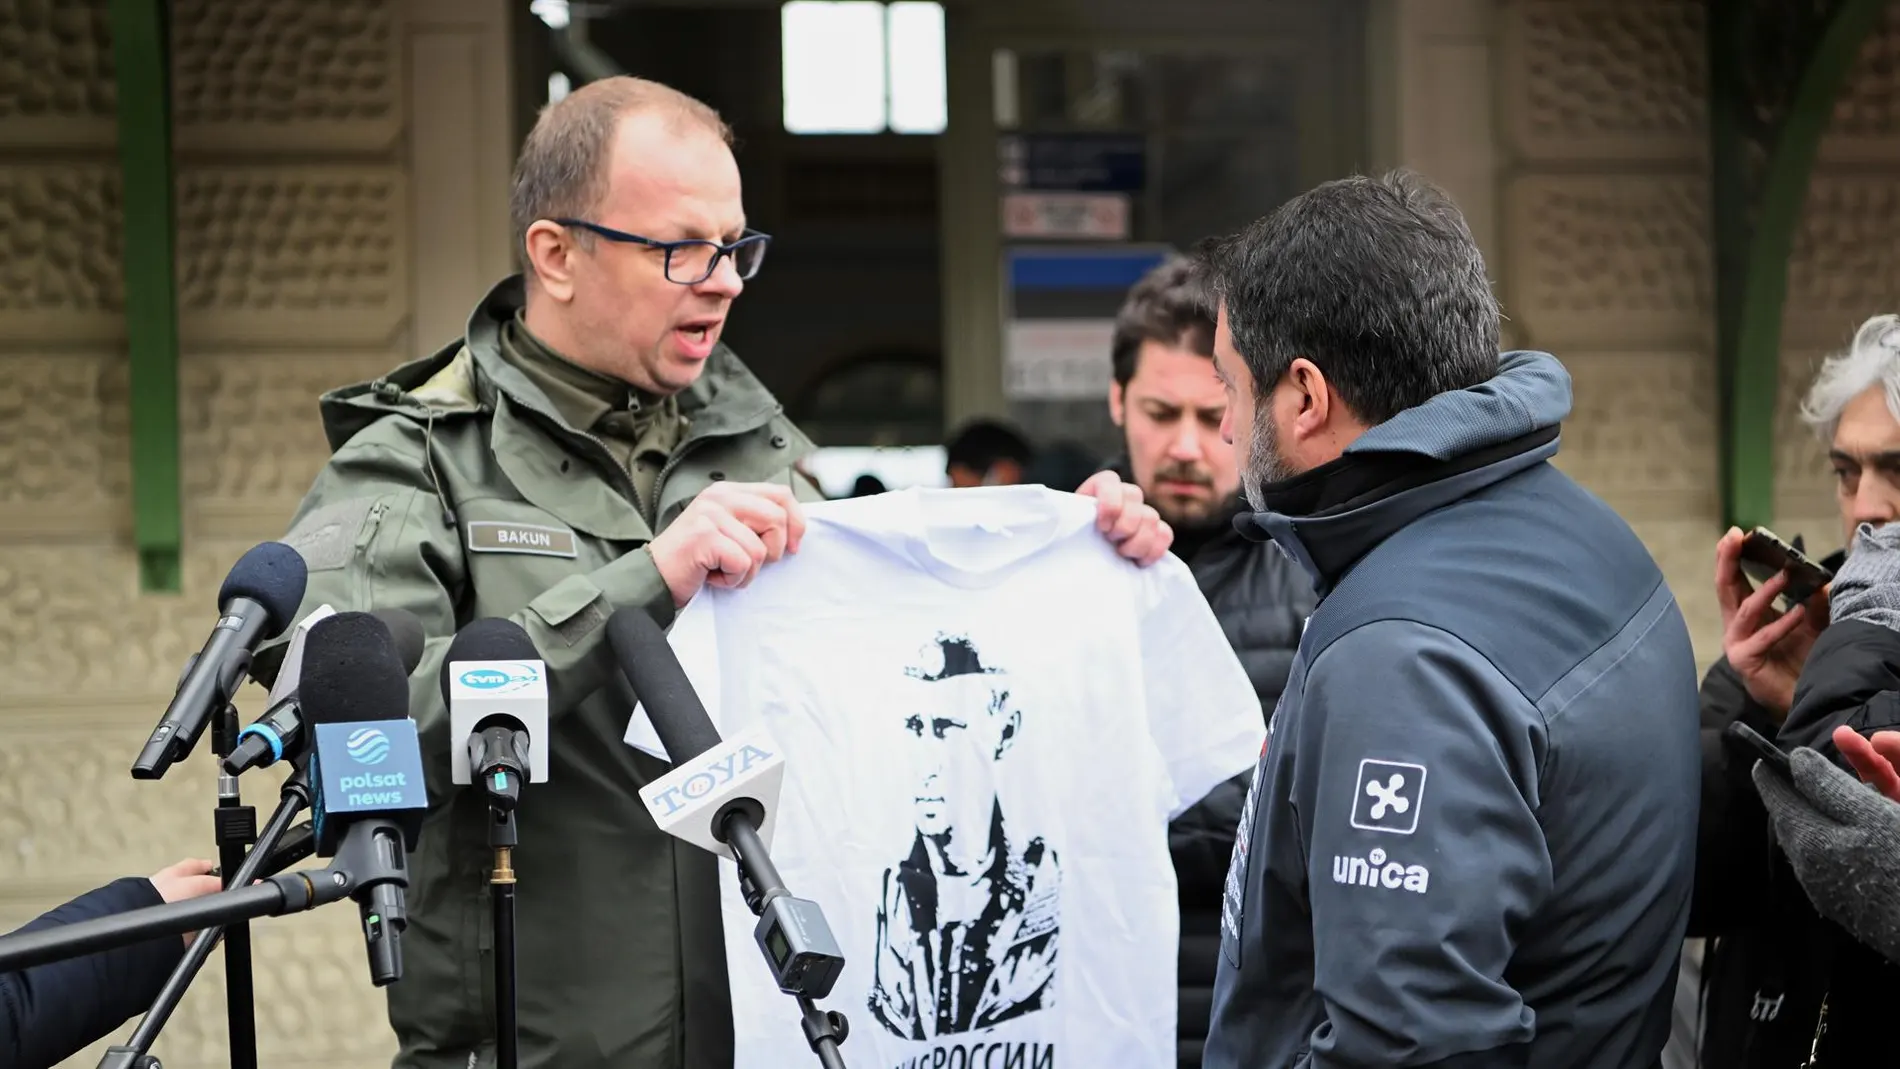 El alcalde de Przemysl Wojciech Bakun muestra una camiseta con el retrato de Putin durante una conferencia de Matteo Salvini.